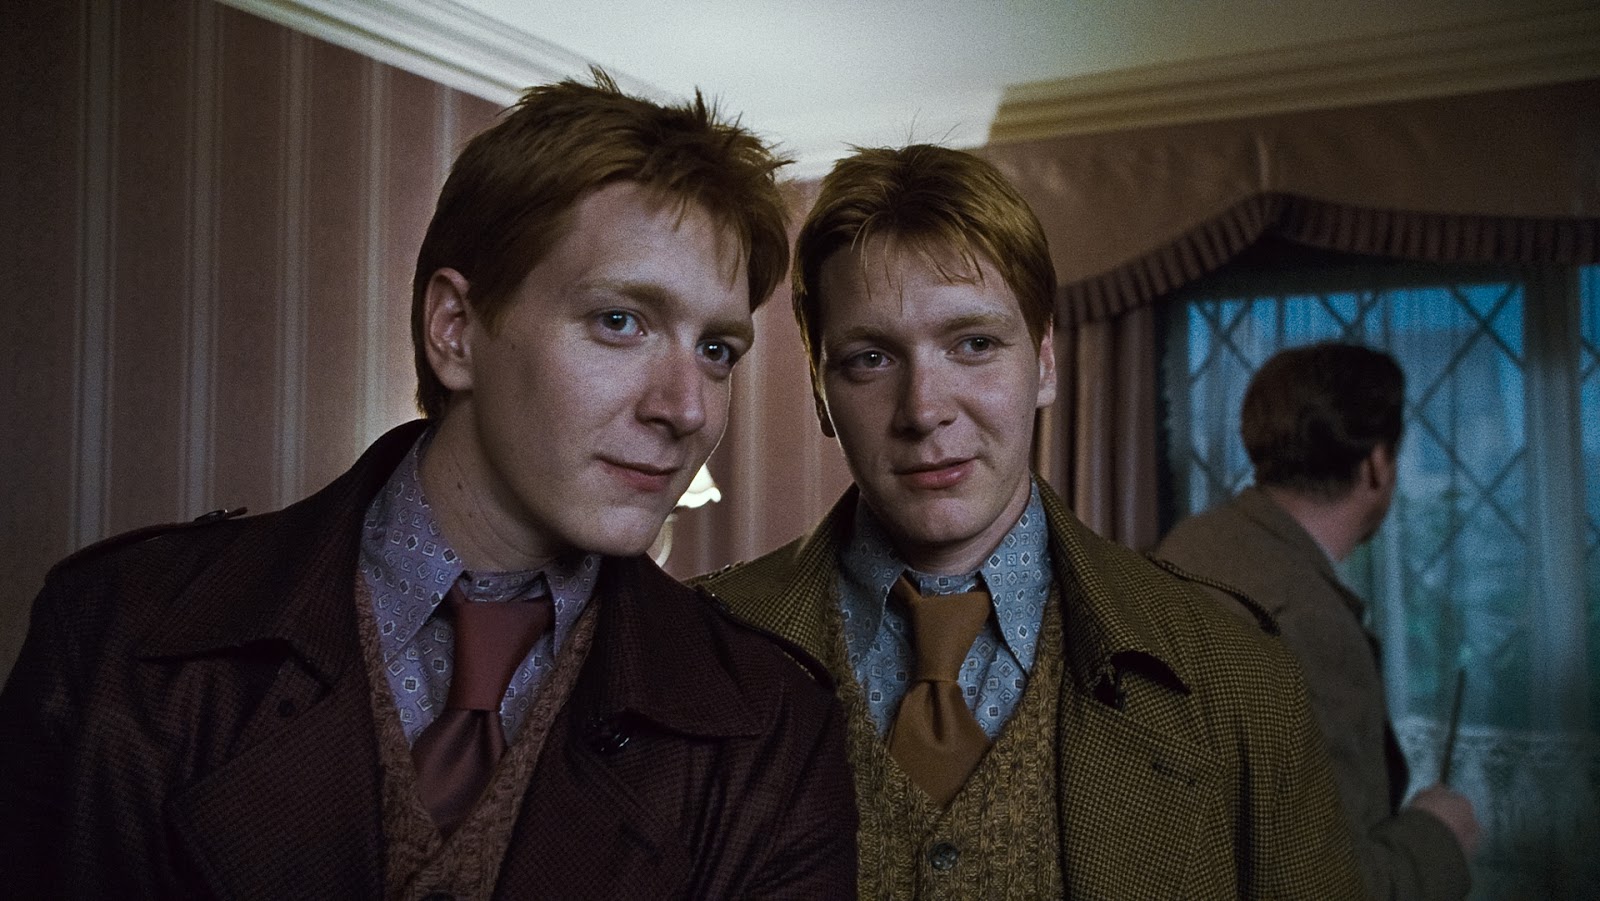 Gêmeos Weasley em cena de Harry Potter (Reprodução)